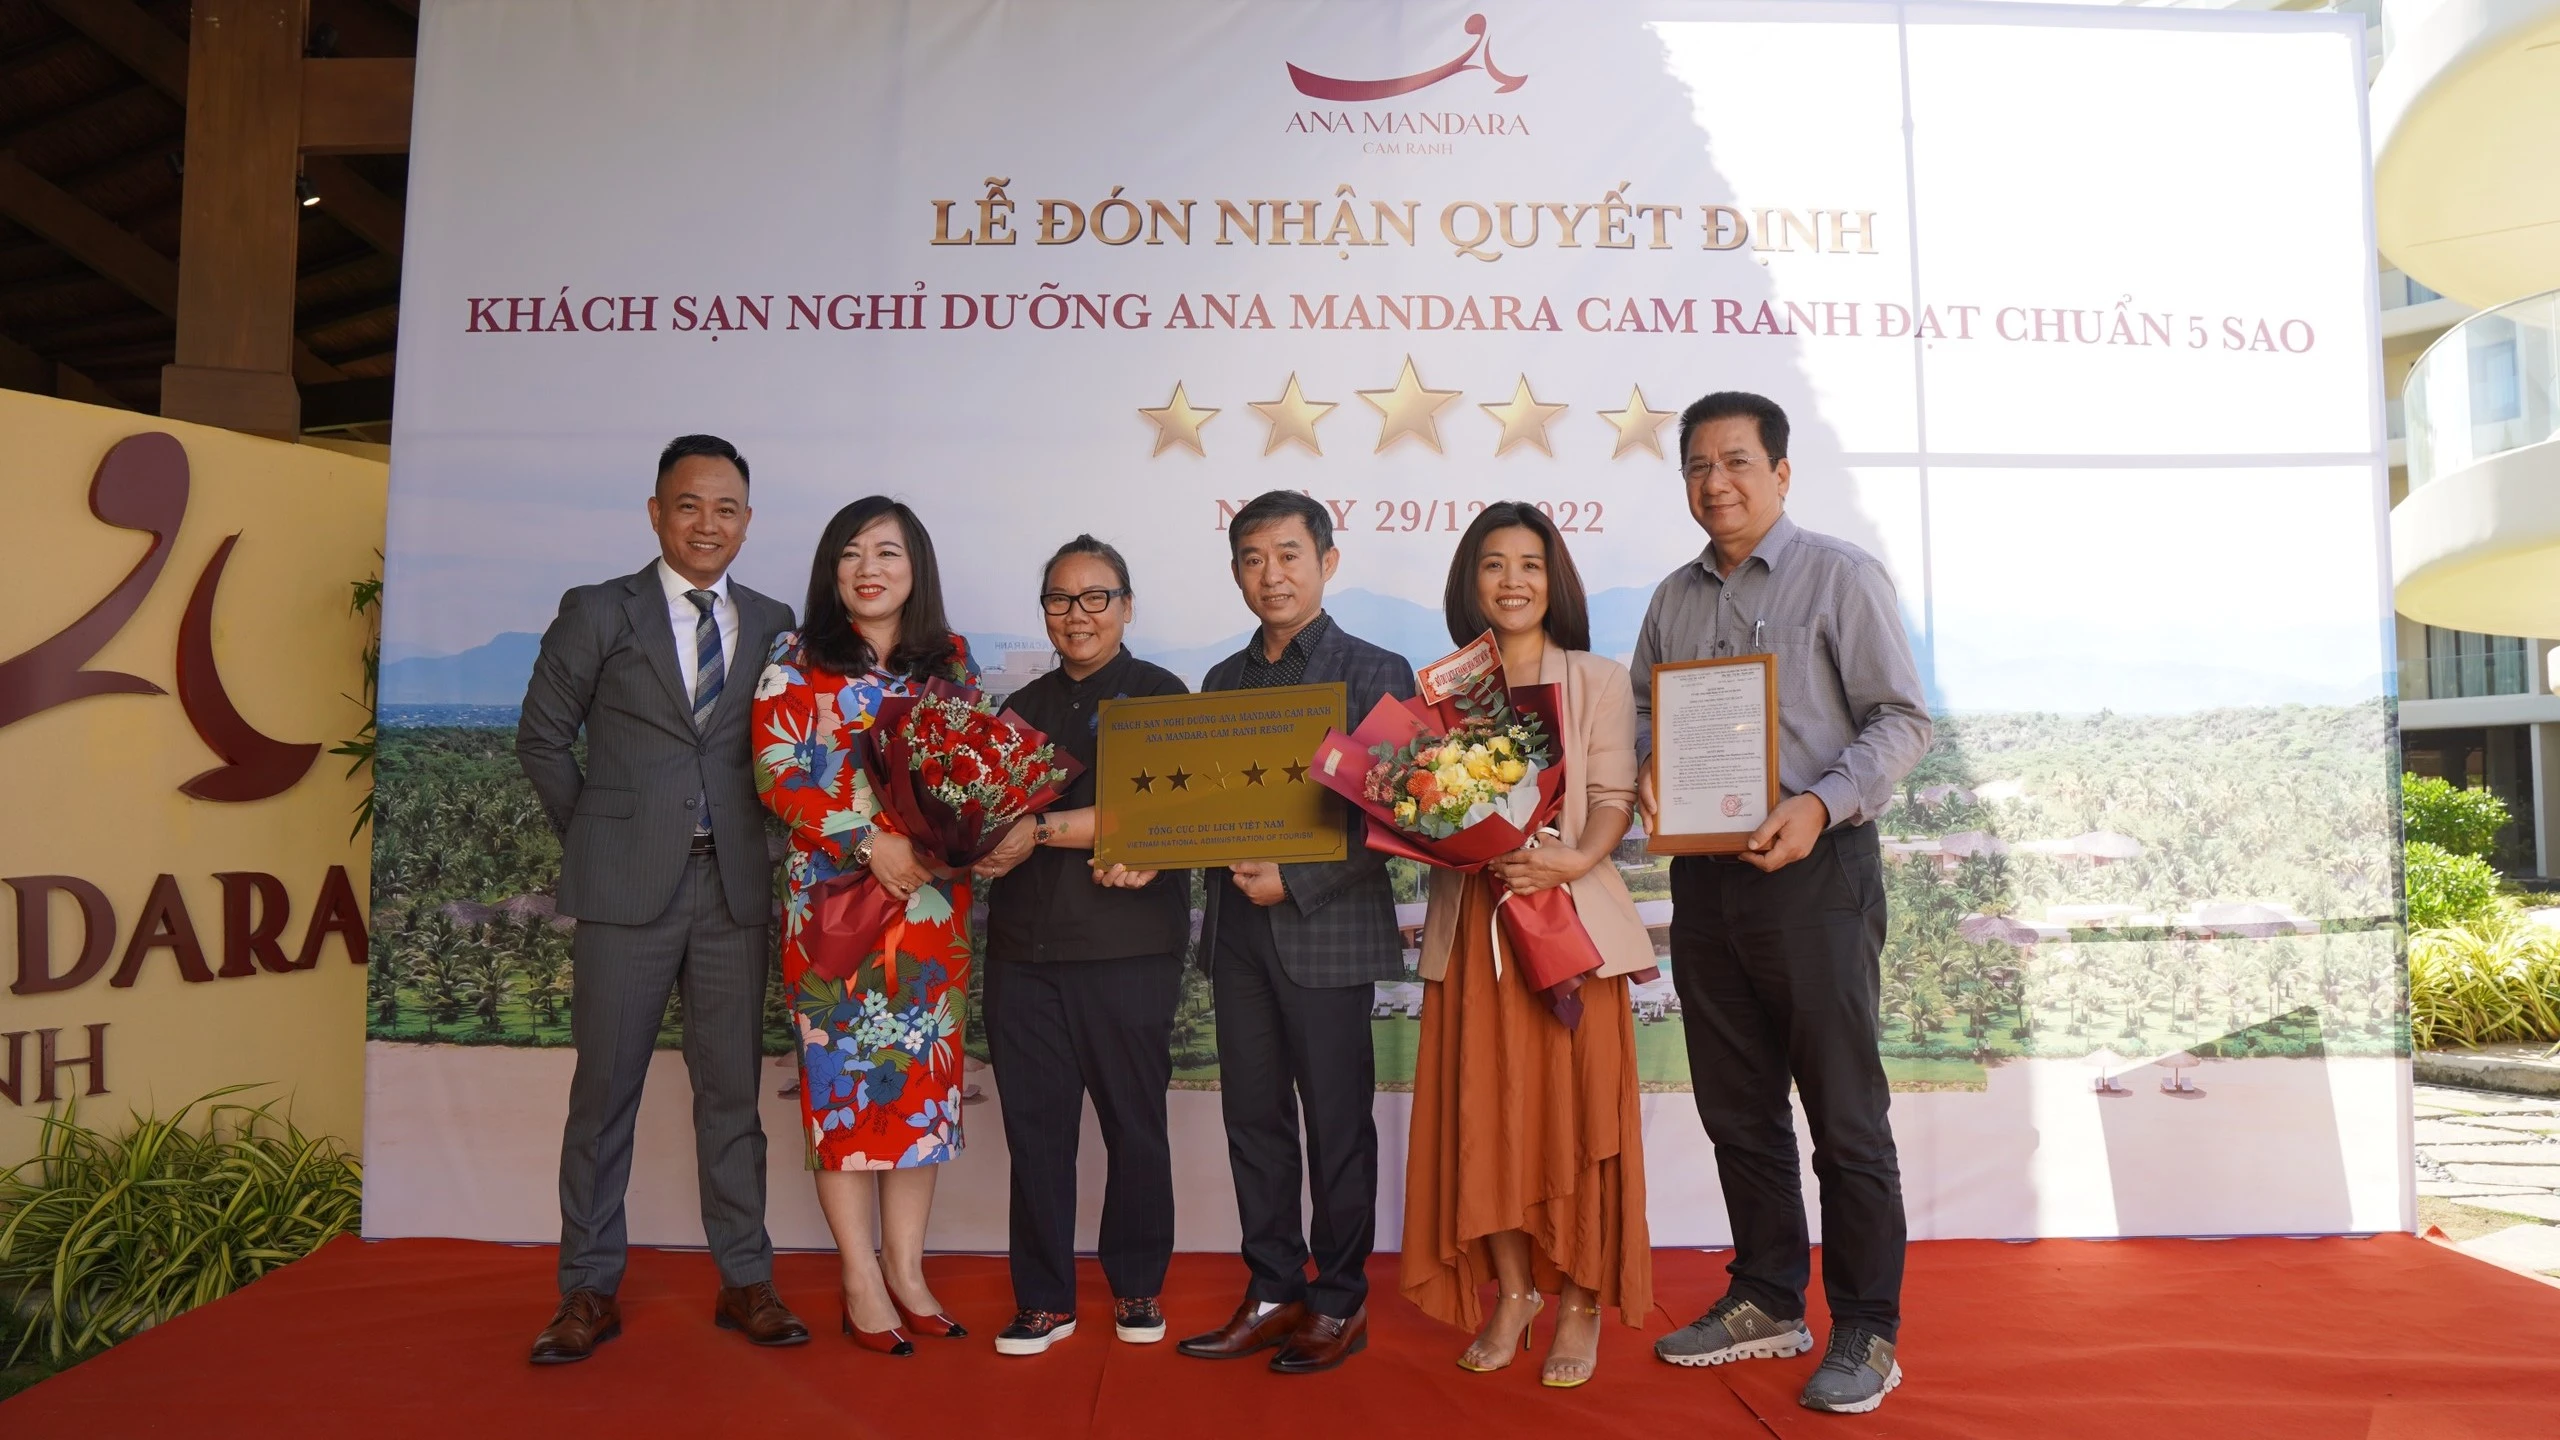 Ana Mandara Cam Ranh chính thức nhận quyết định Khu nghỉ dưỡng đạt chuẩn 5 sao